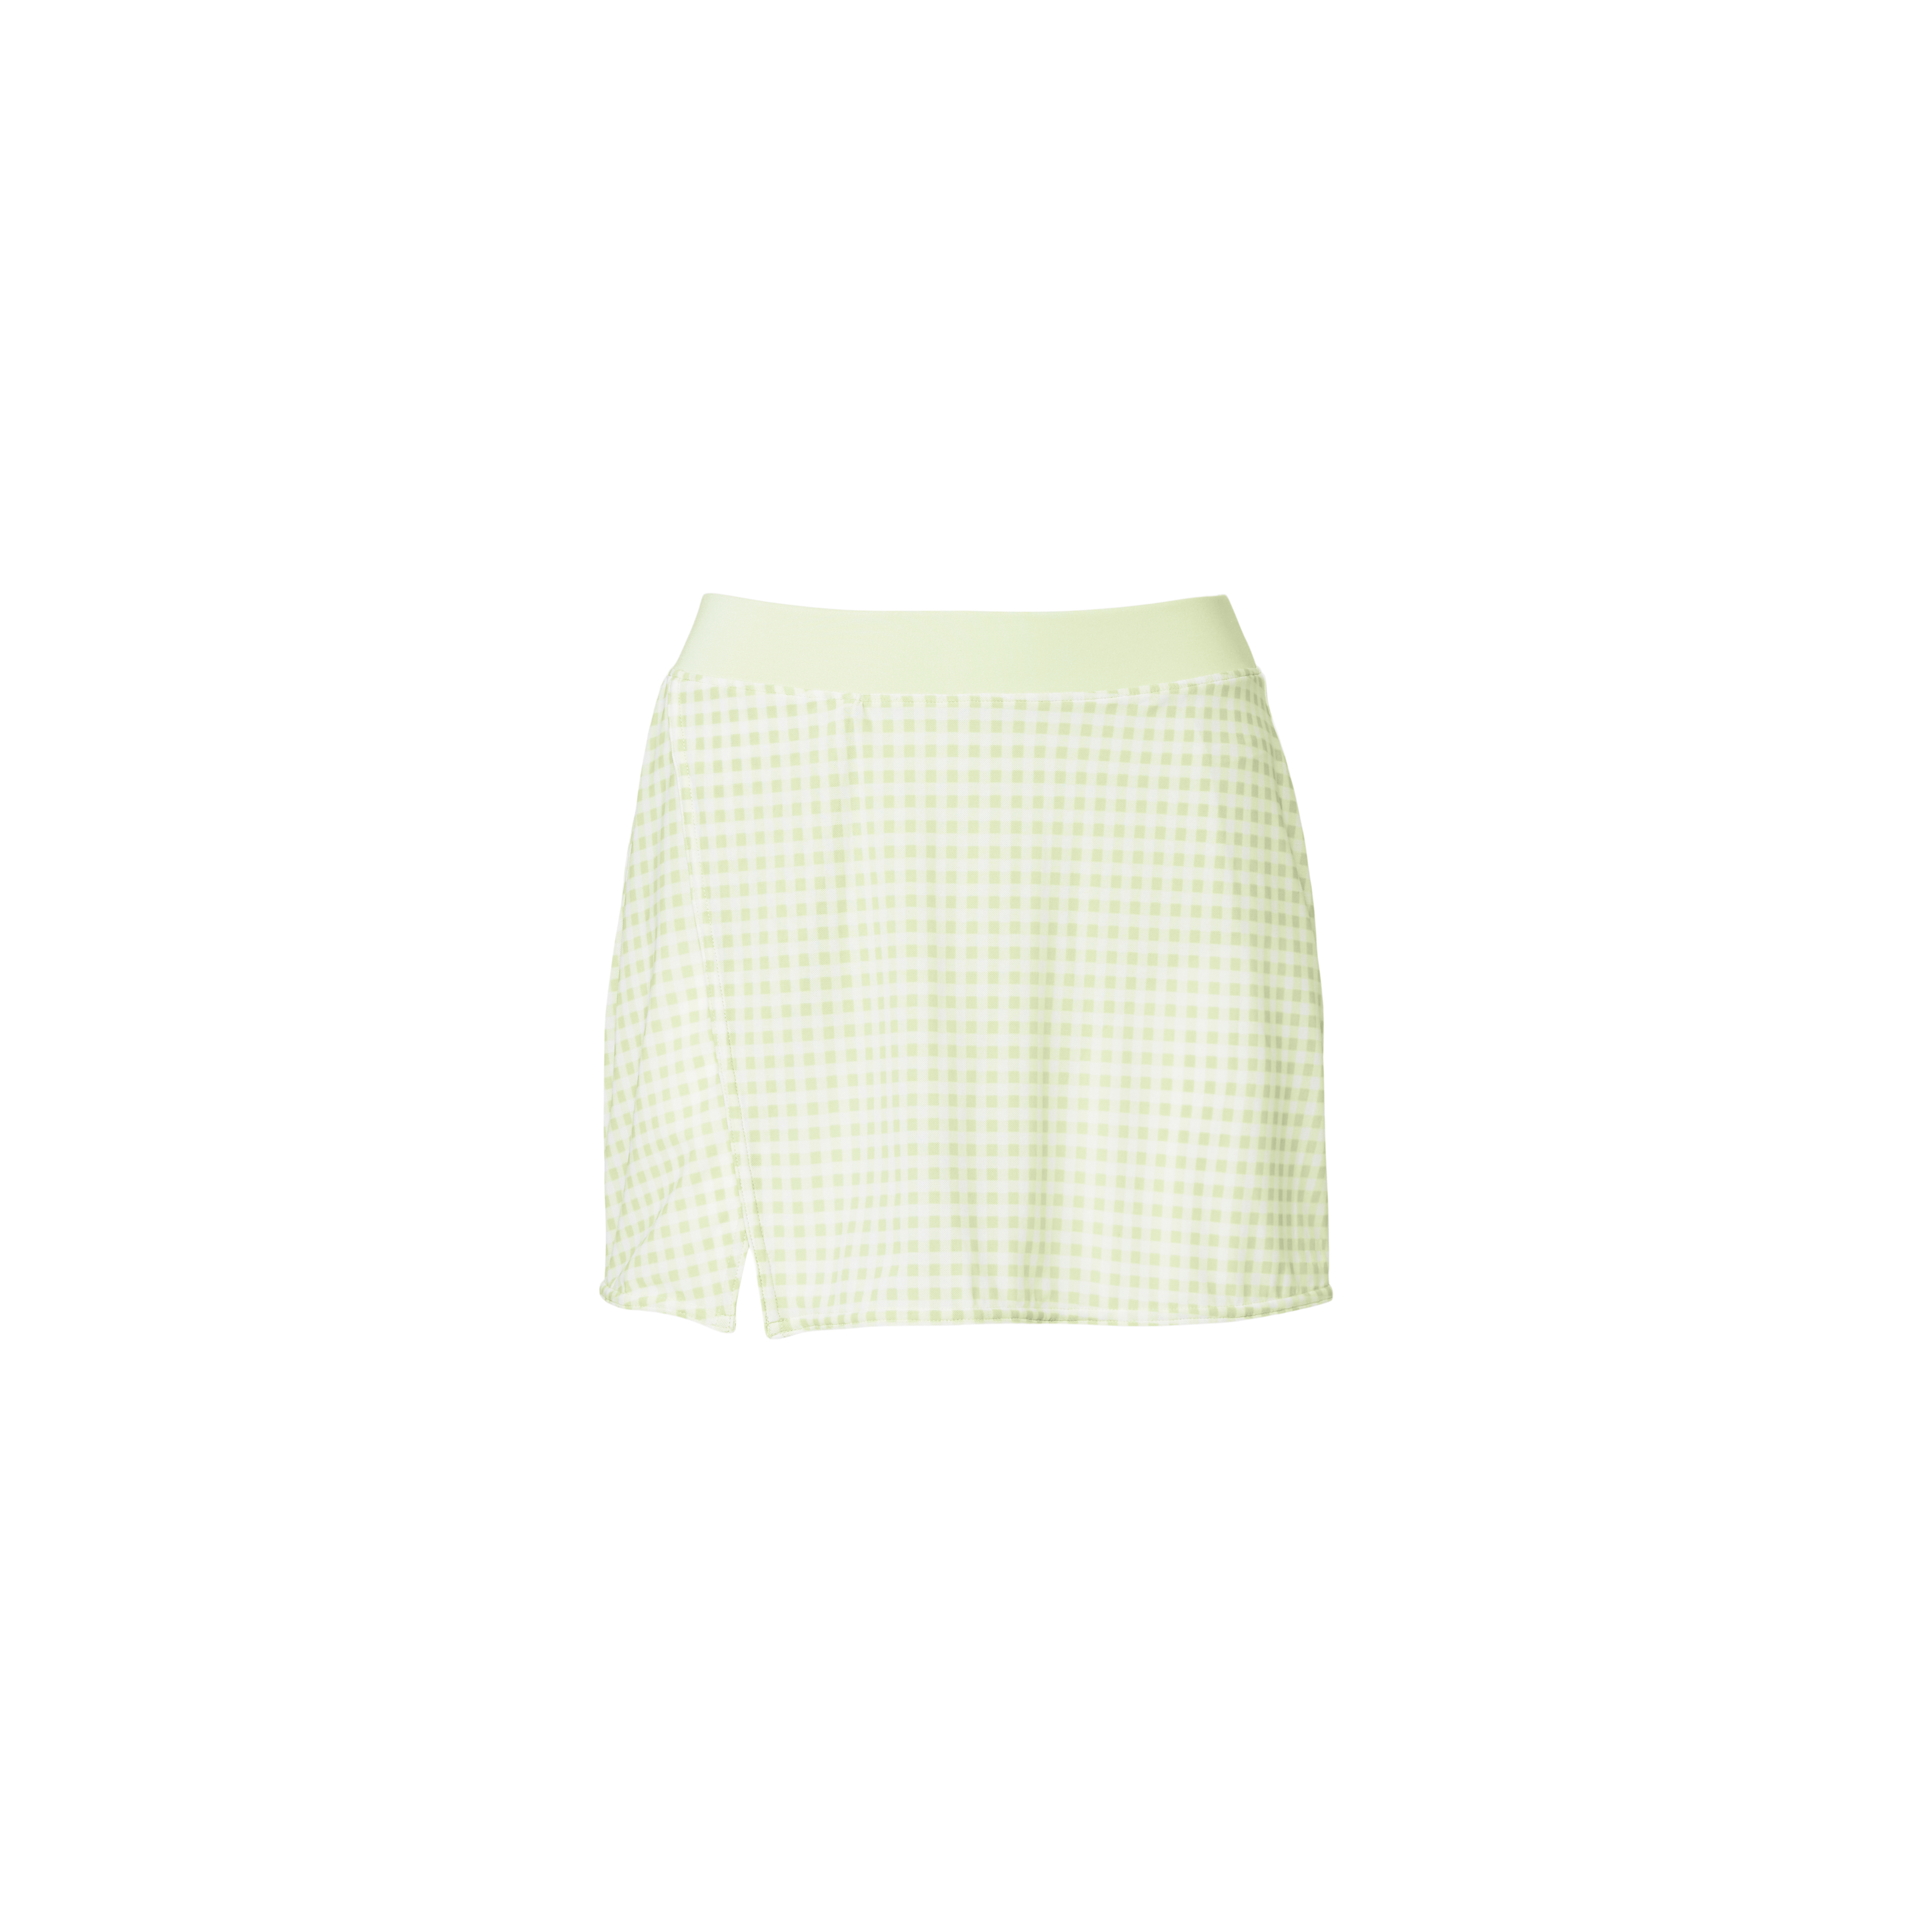 iced_green_tea_skirt.jpg